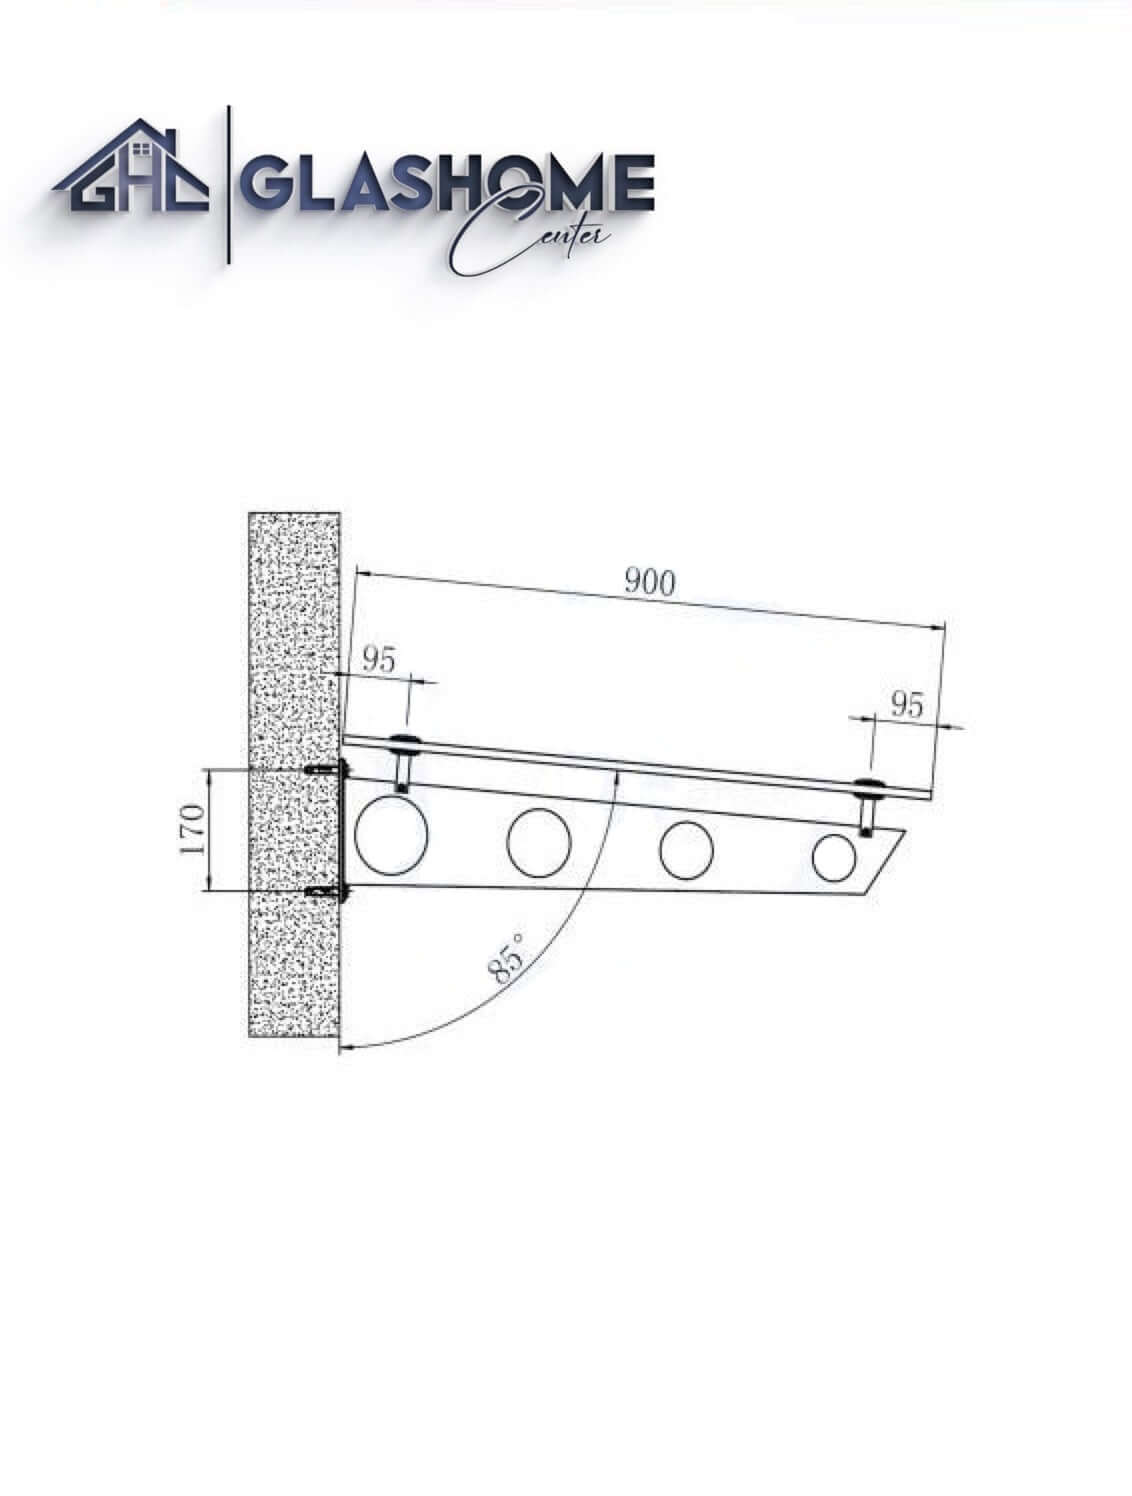 GlasHomeCenter - Glasvordach - Milchglas - 150x90cm - 13.1mm VSG - inkl. 2 Edelstahlhalterungen Variante "Stockholm"